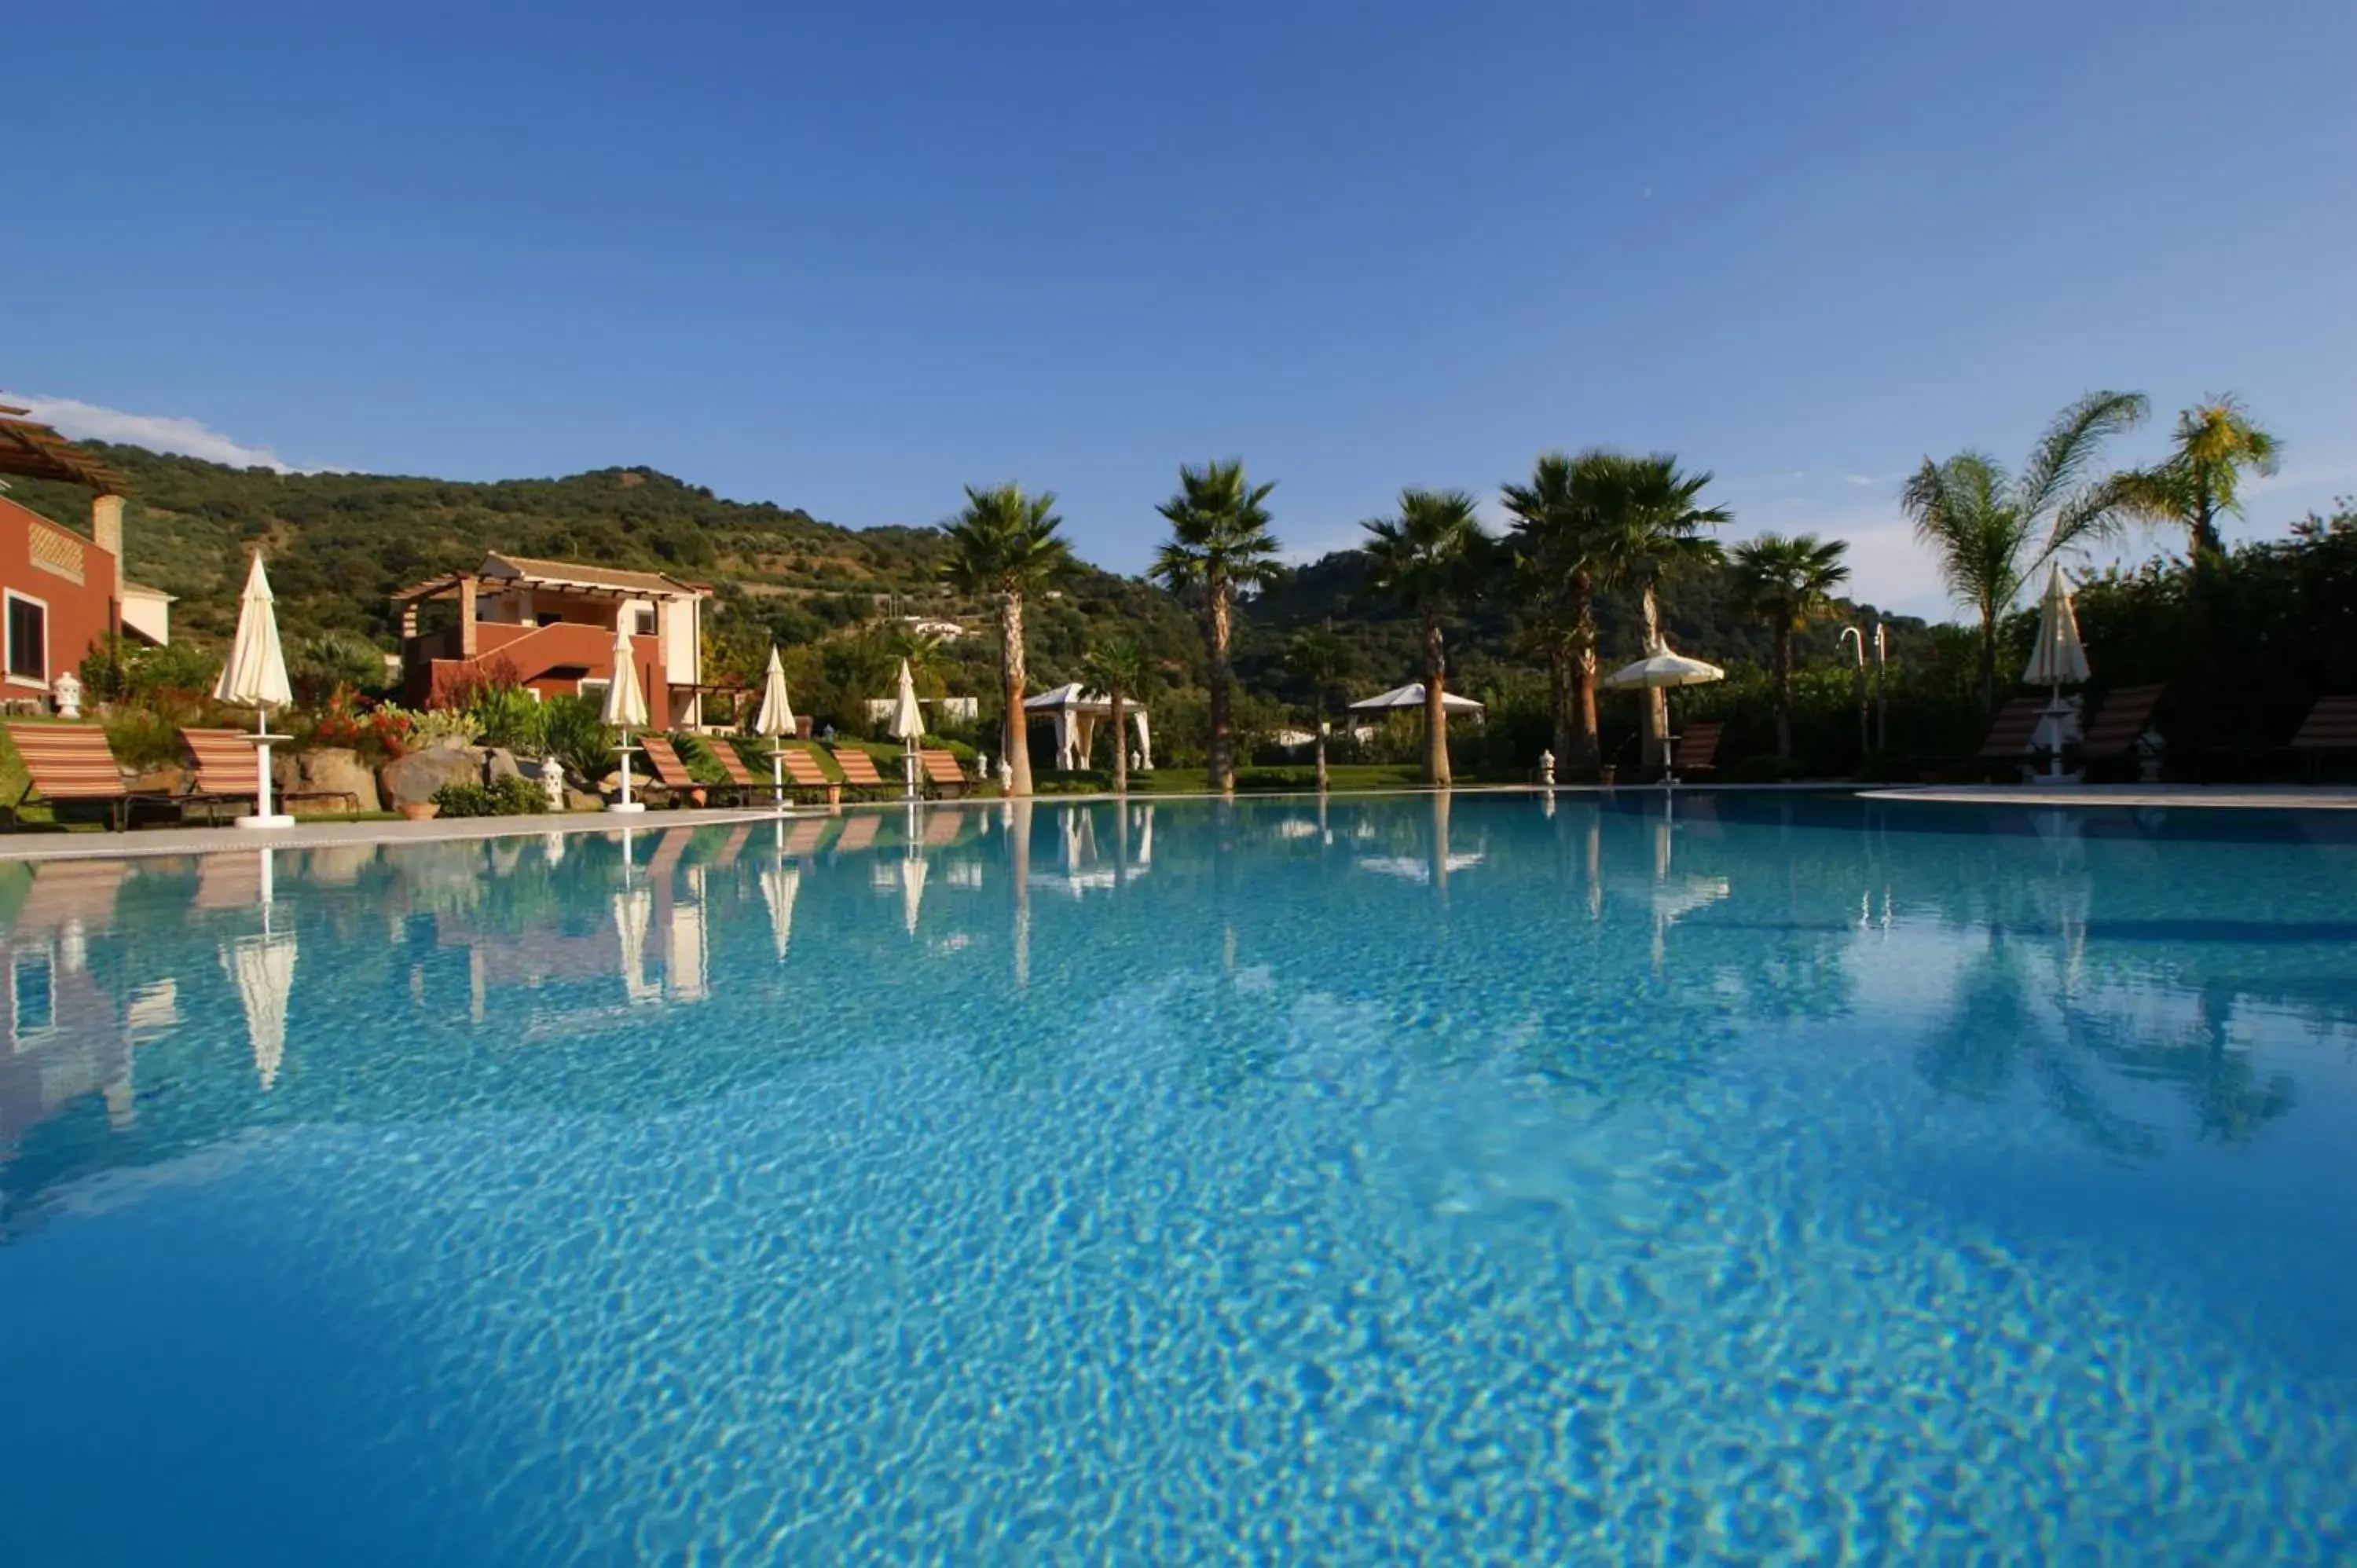 Property building, Swimming Pool in Alcantara Resort di Charme